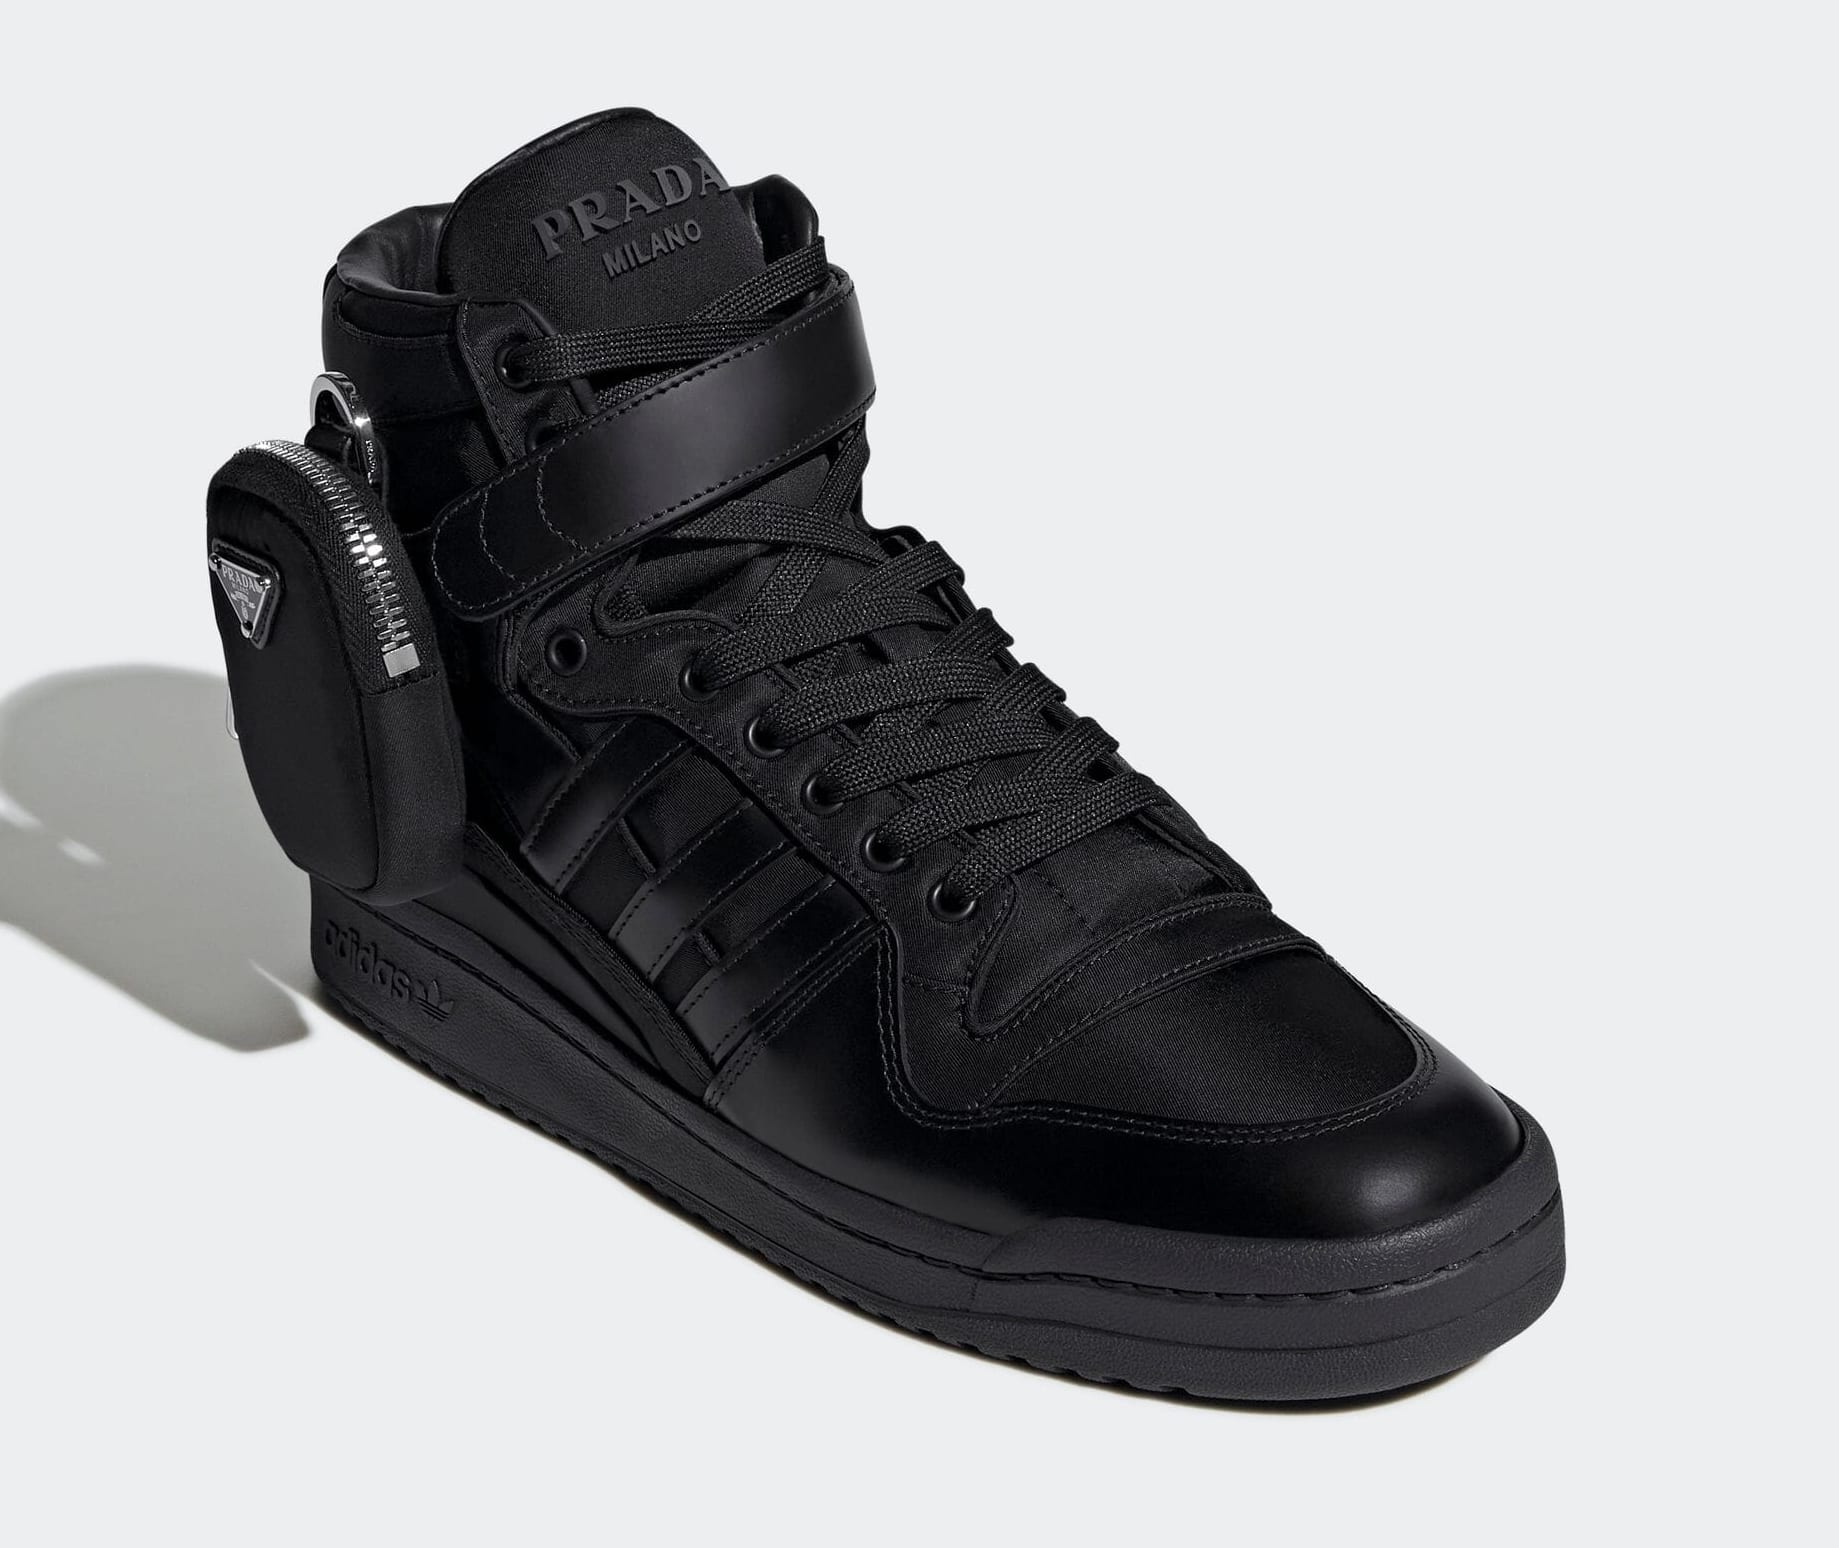 Prada x Adidas Forum High 'Black' GY7040 Front